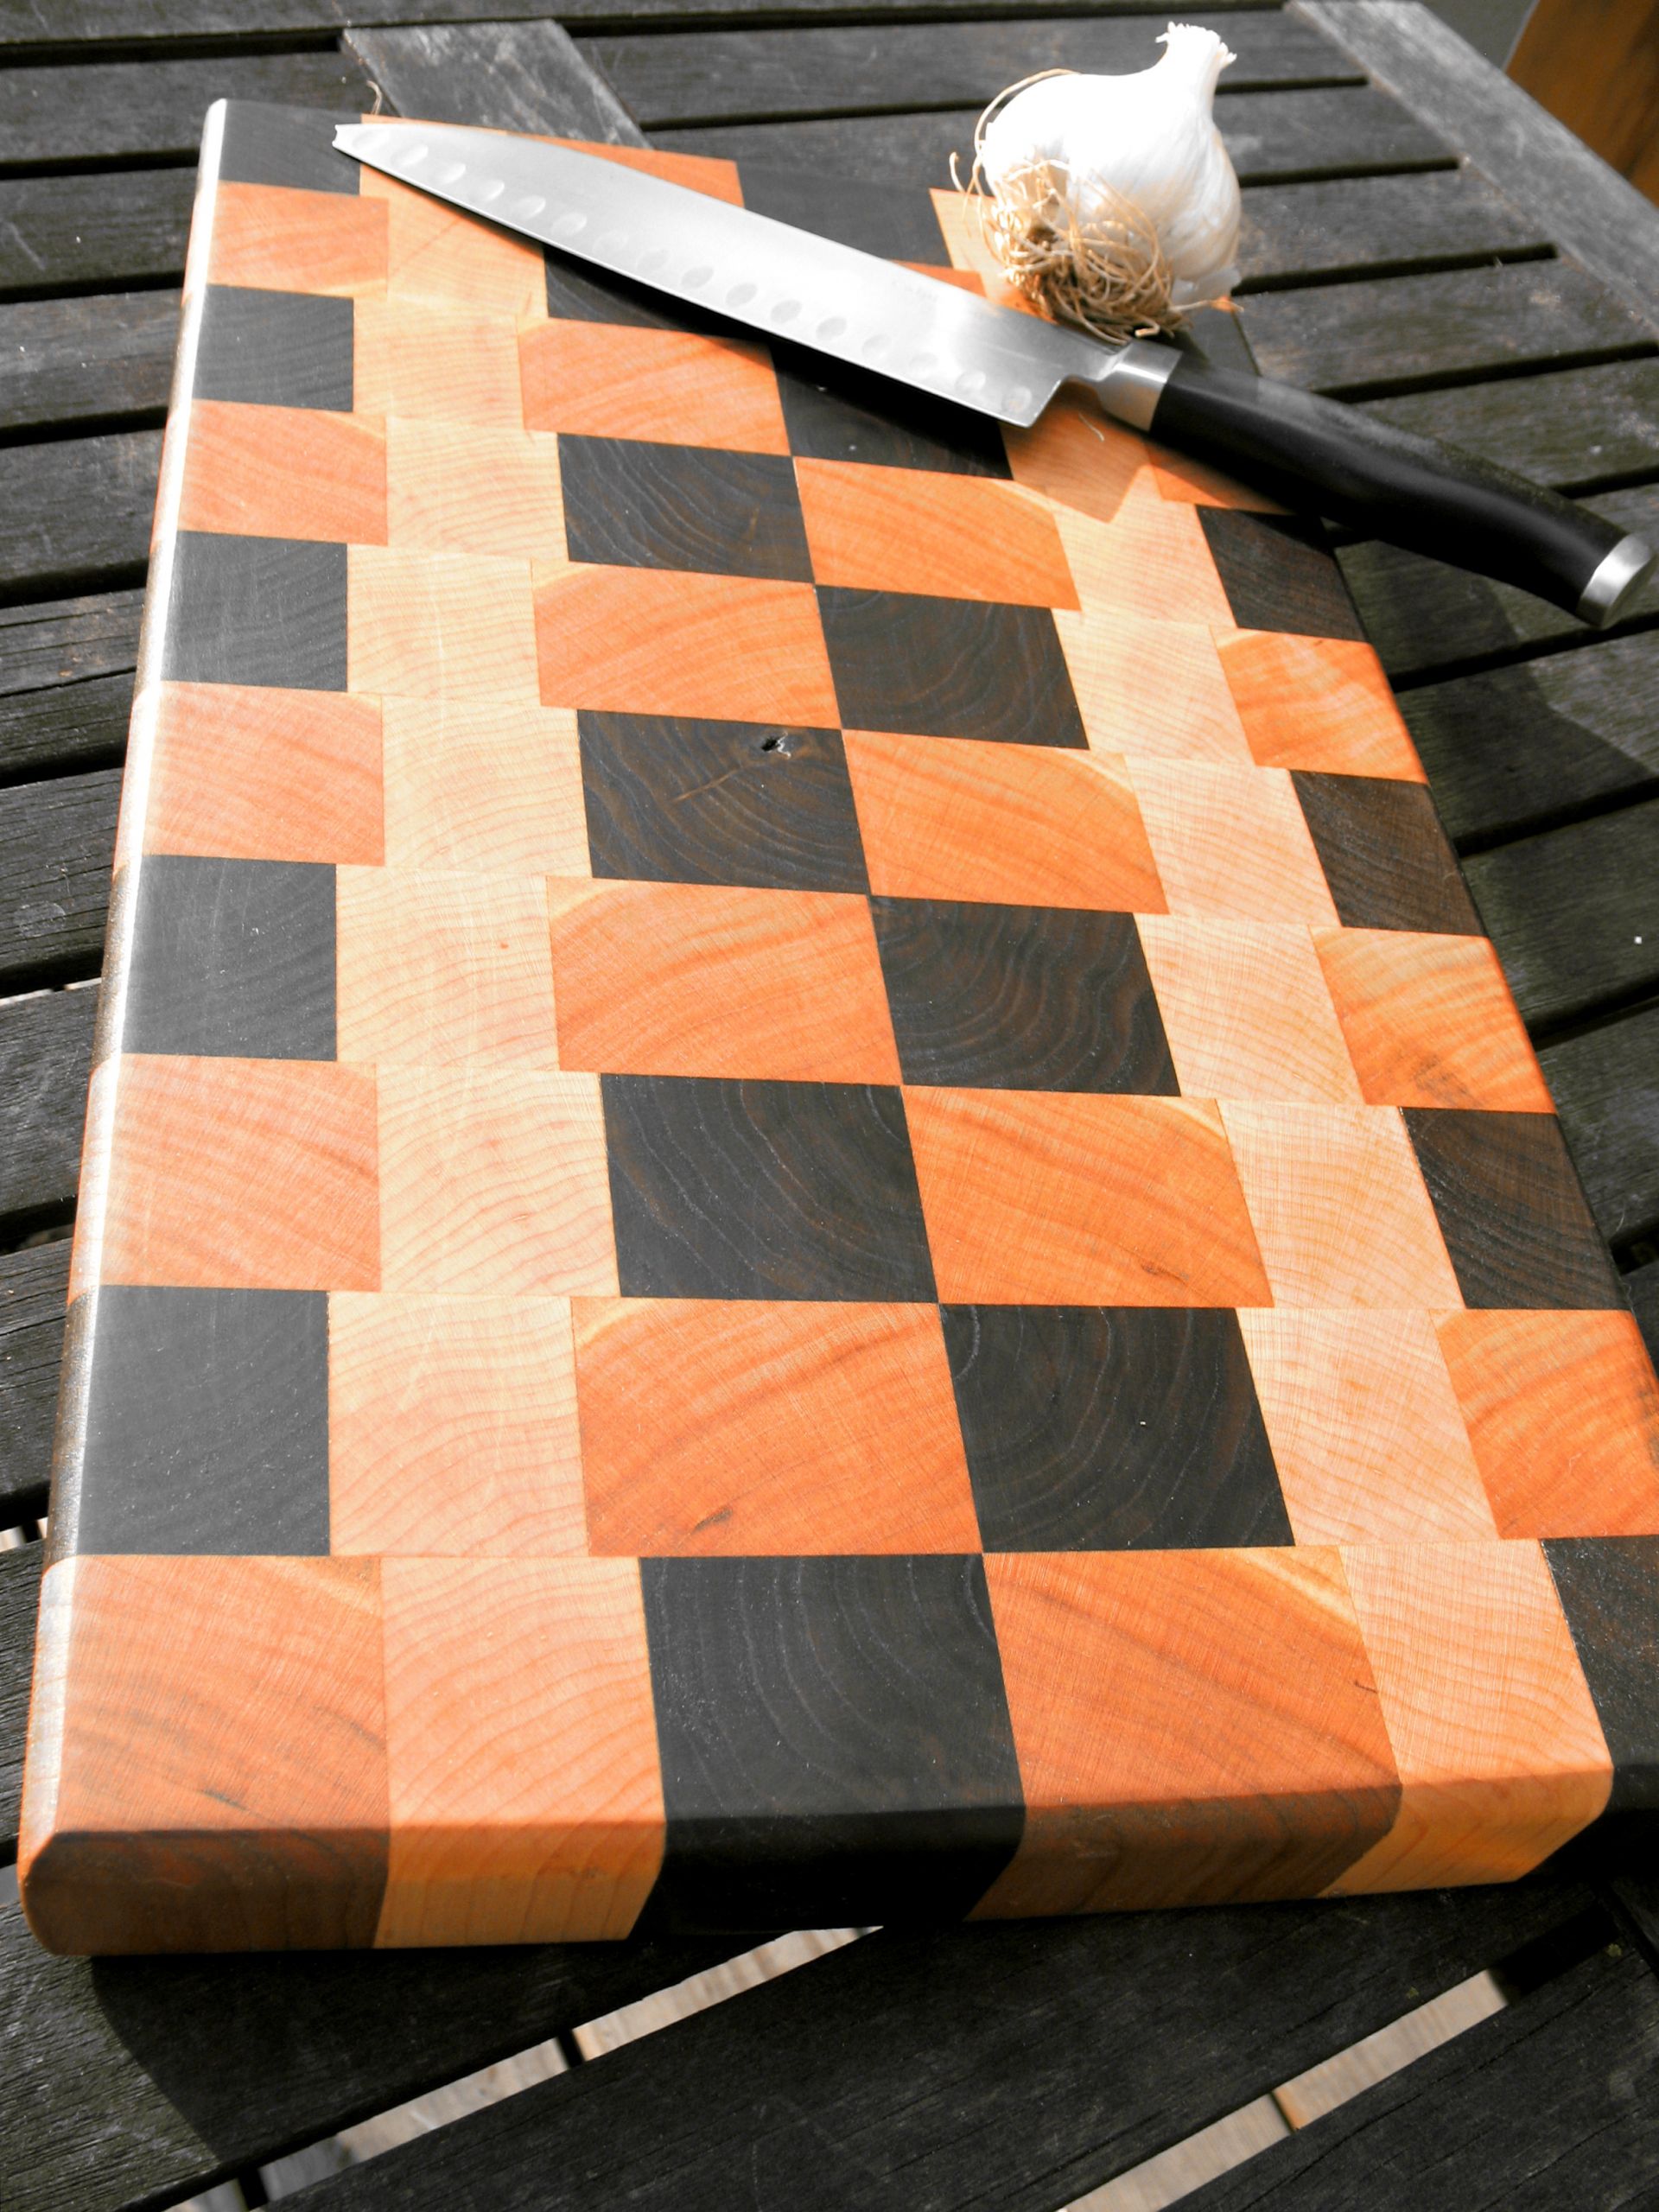 DIY Wooden Cutting Board
 DIY Exotic Wood Cutting Boards Download wood decks plans